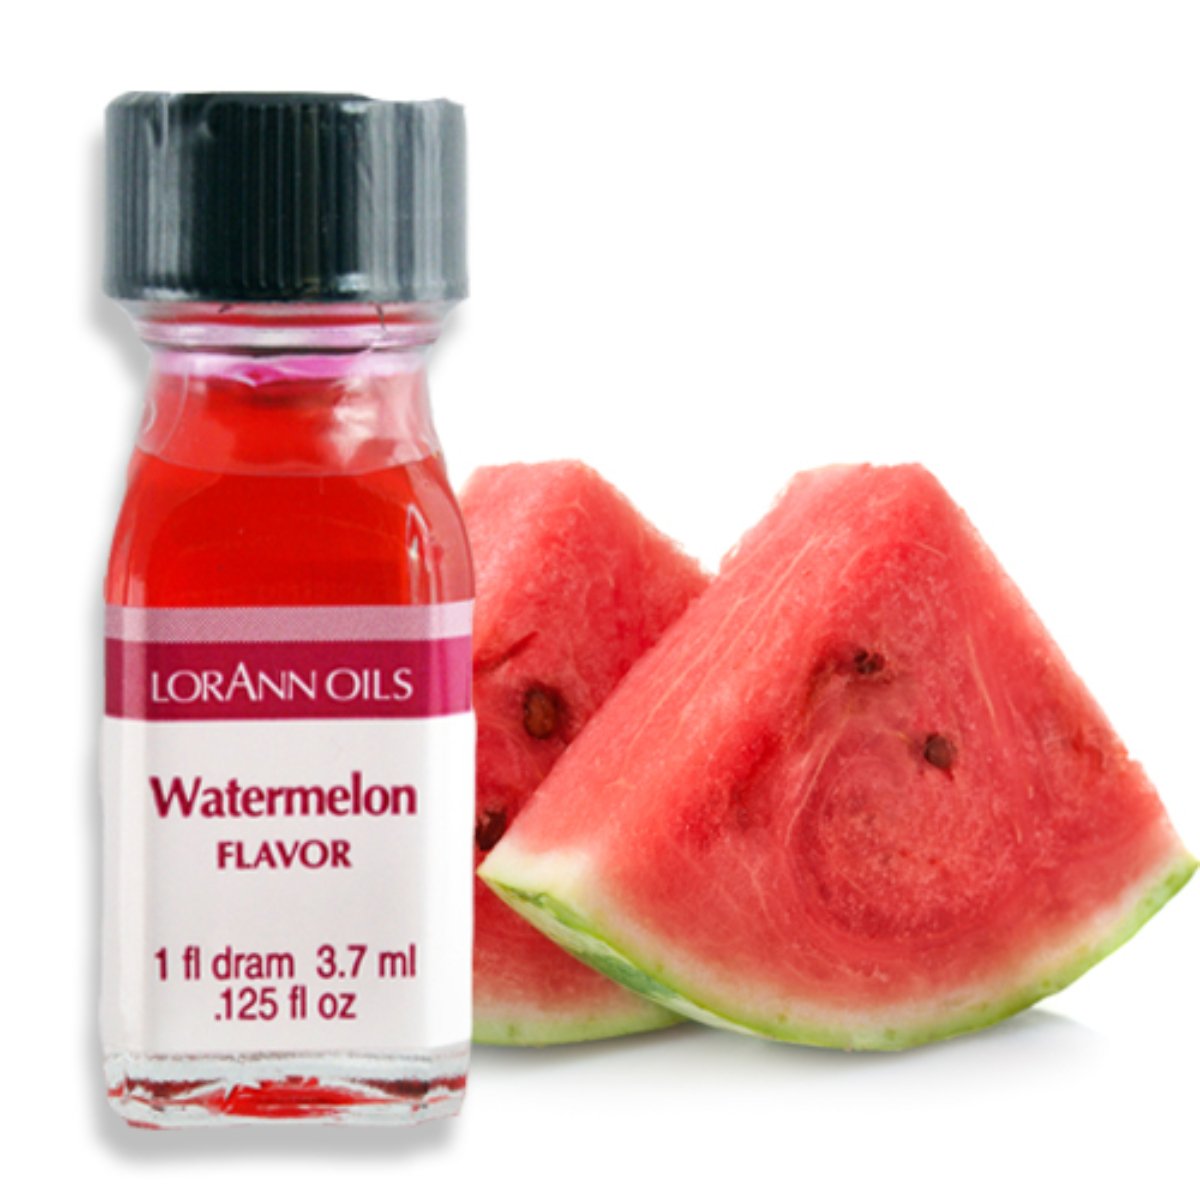 Watermelon Flavor 1 Dram - Bake Supply Plus